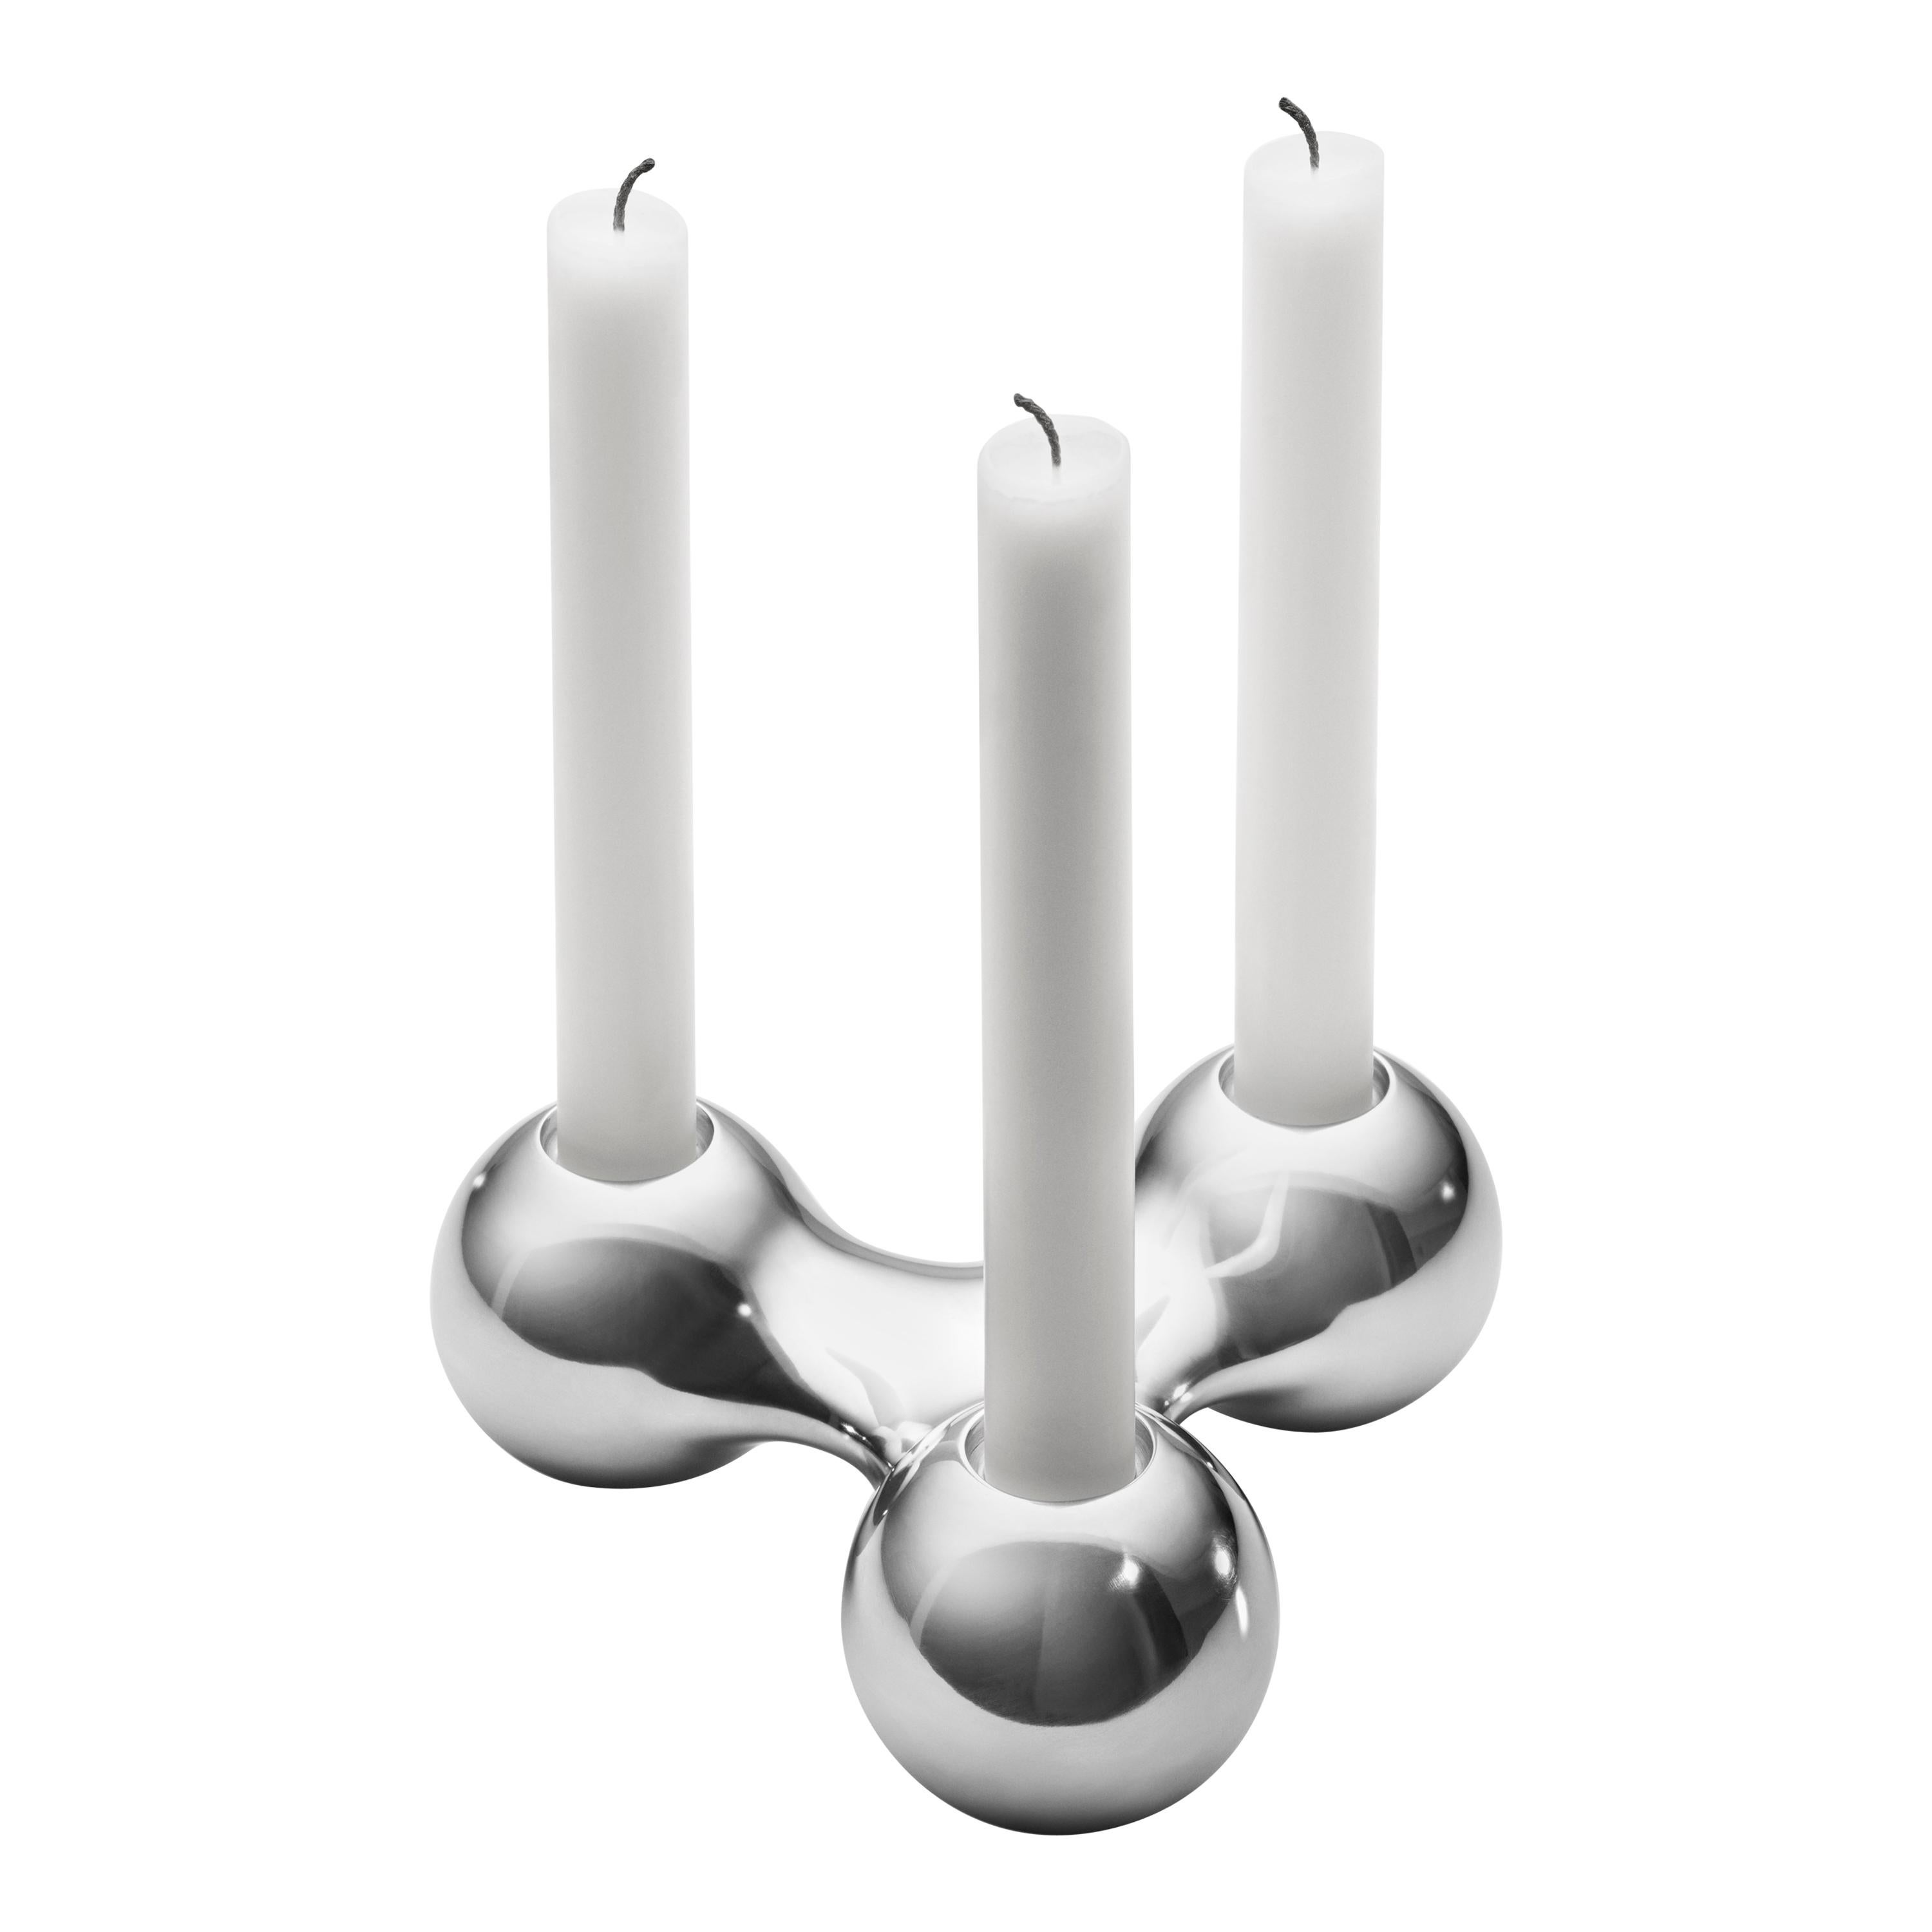 Georg Jensen Arne Jacobsen Candleholder in Aluminium by Arne Jacobsen For Sale